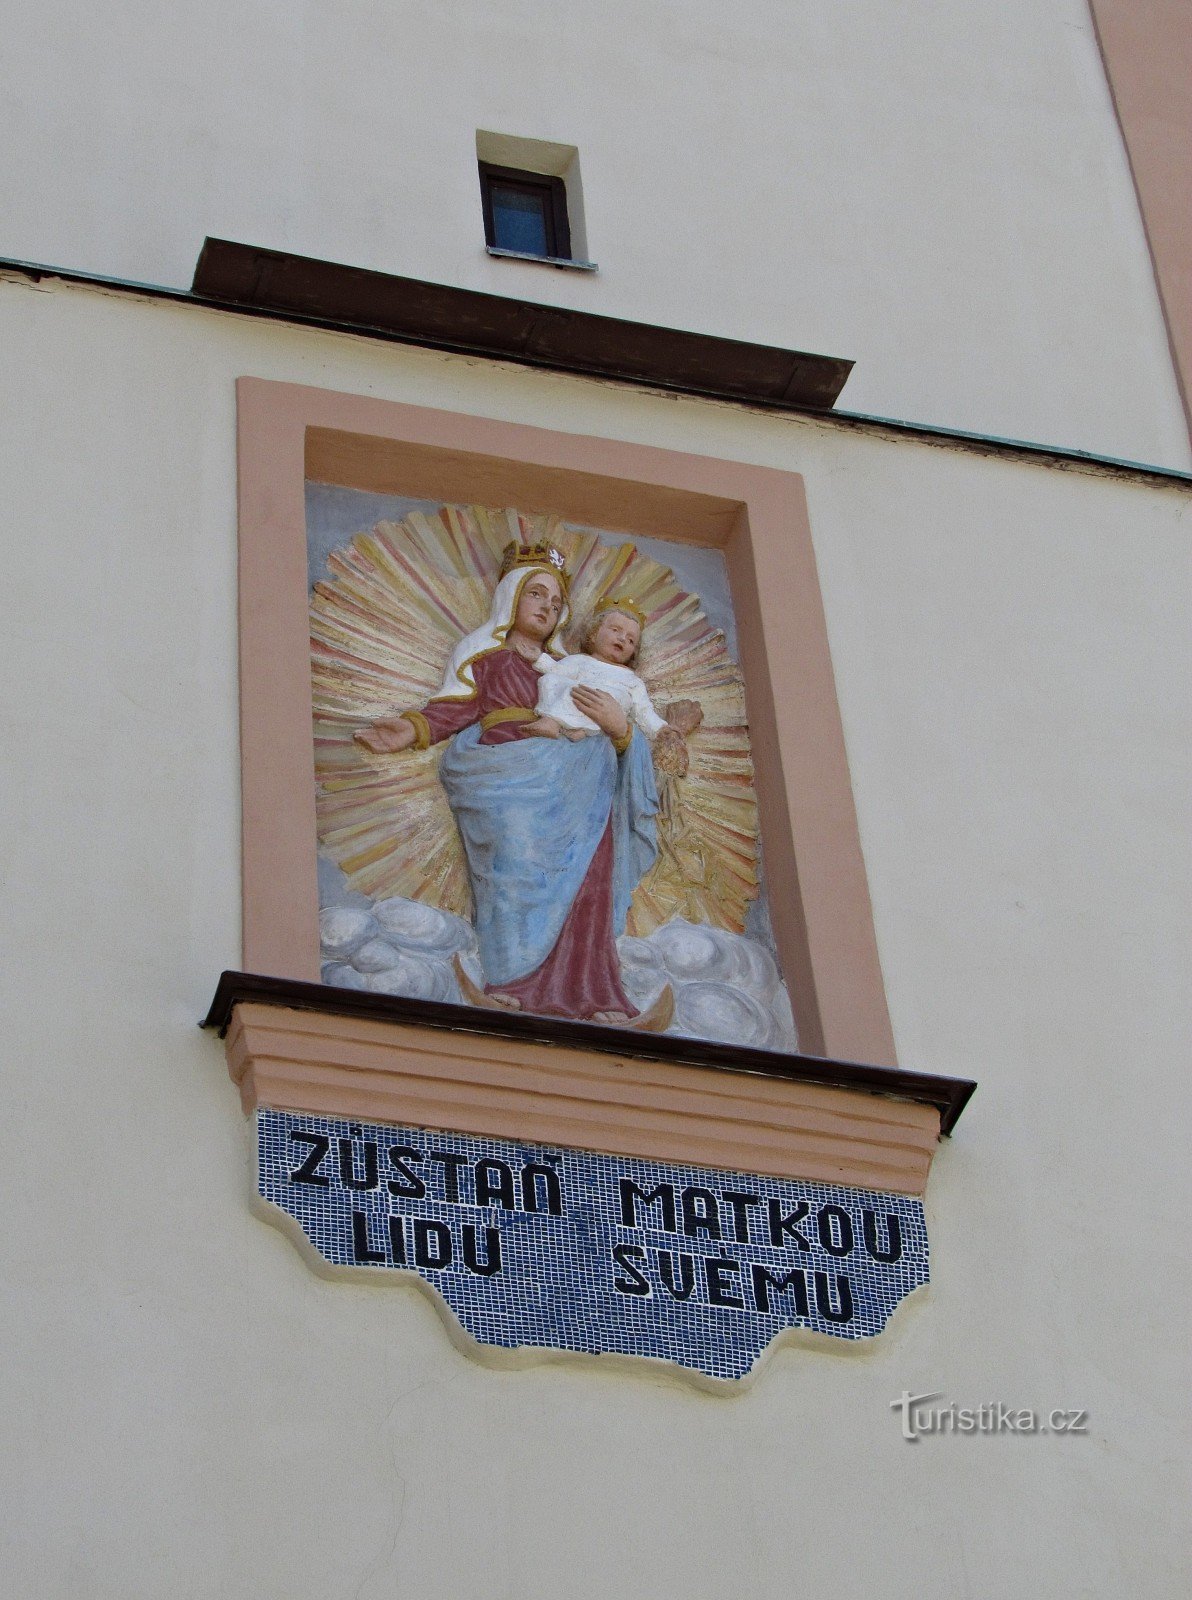 Drahotuše - Pyhän Laurentiuksen seurakuntakirkko